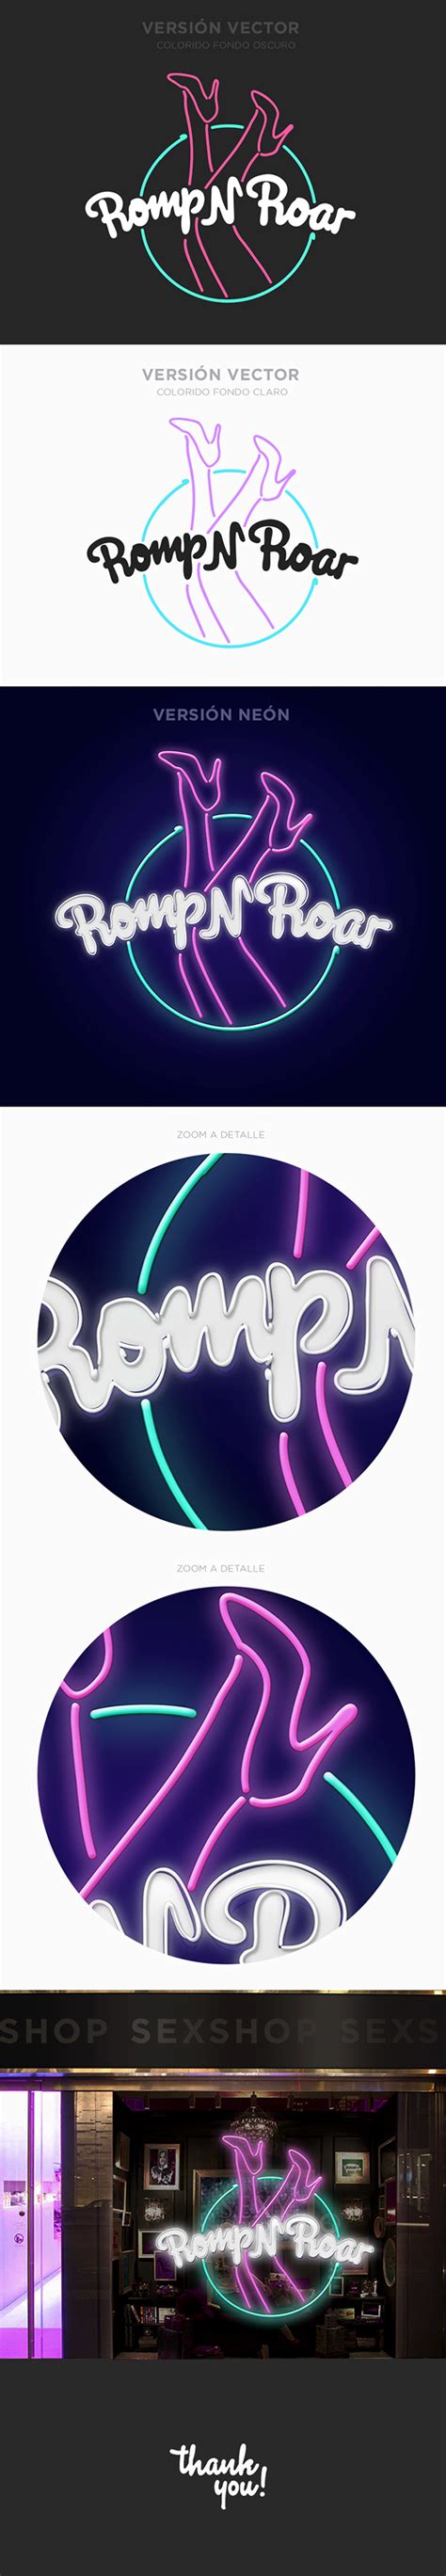 Romp N Roar Sex Shop Logo On Behance